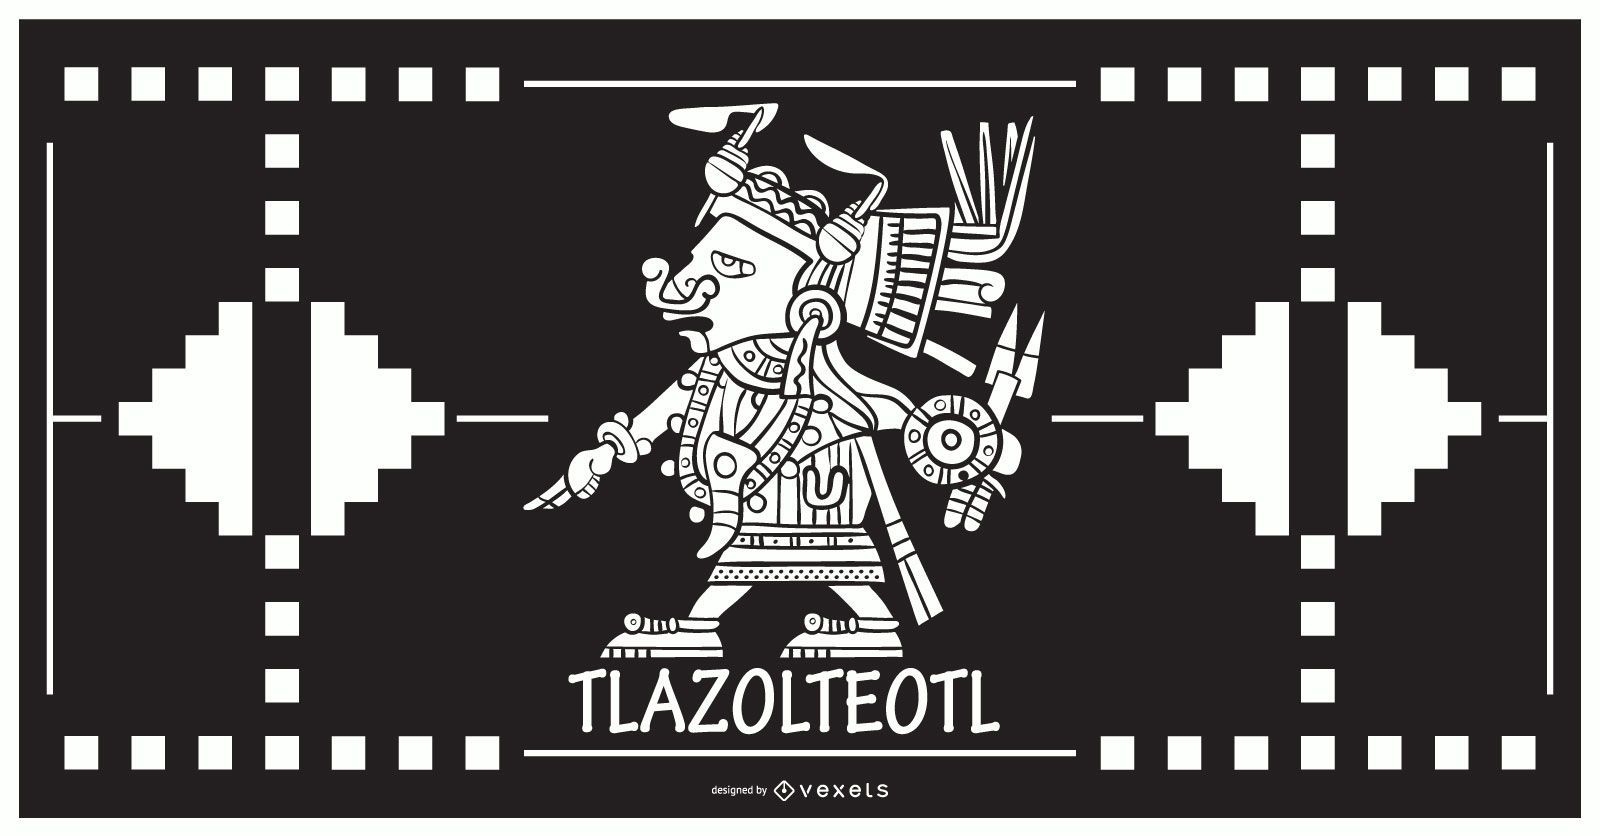 Projeto do deus asteca Tlazolteol